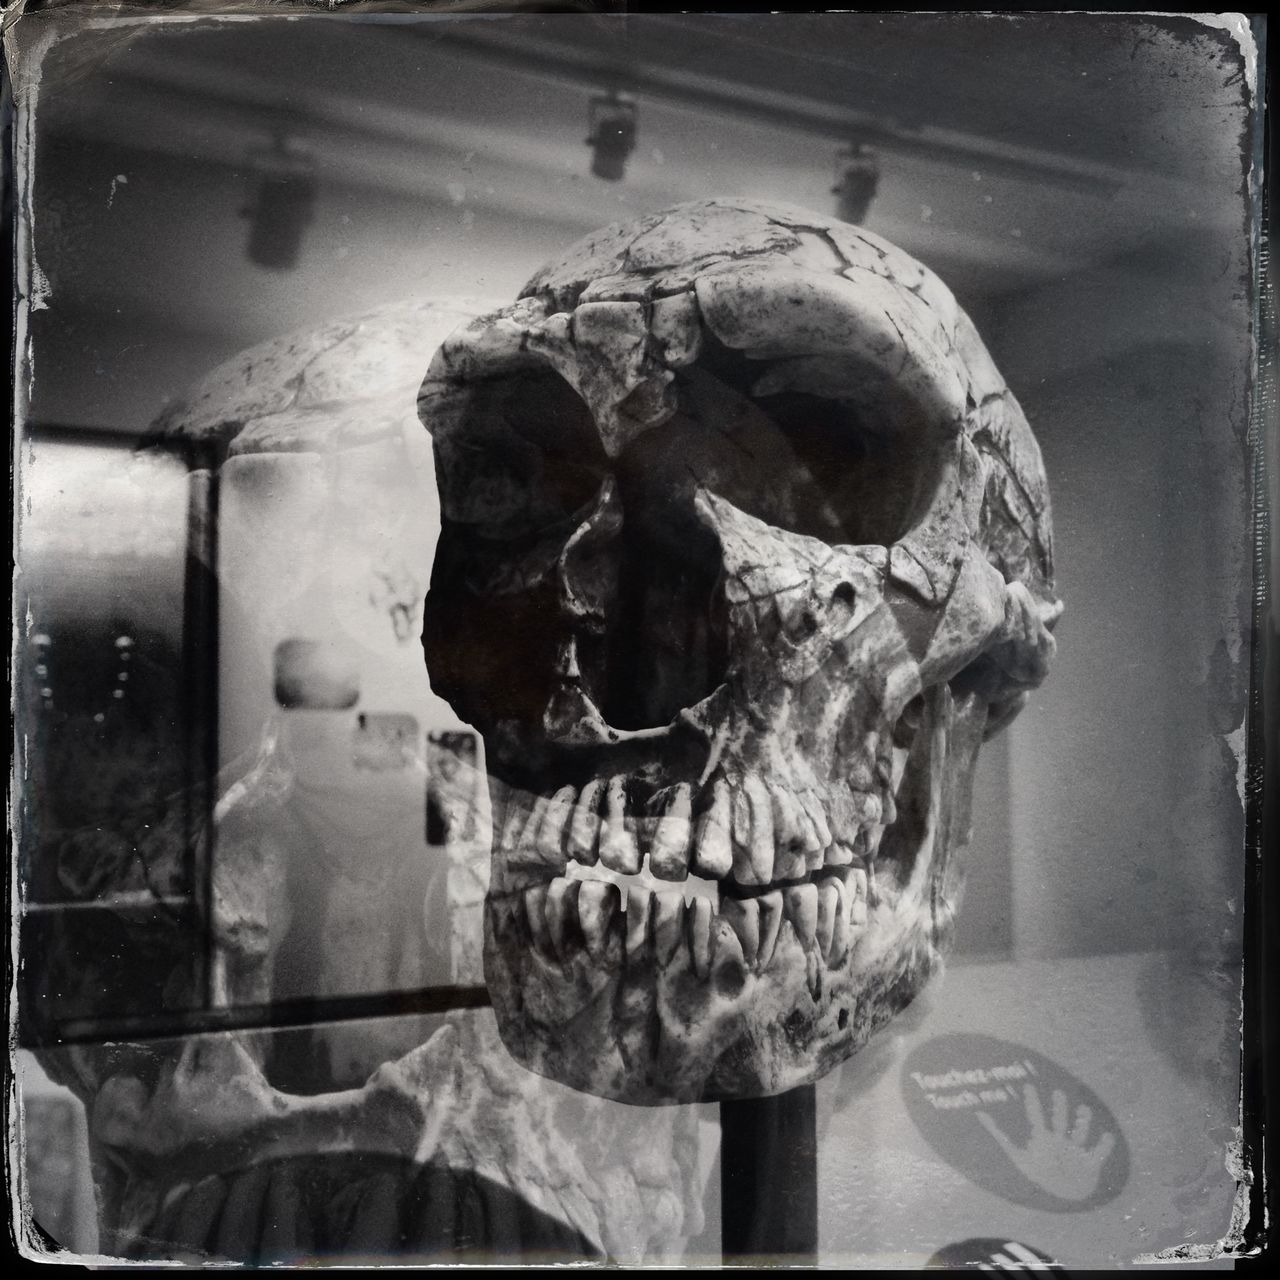 Schwarz-weiß-Foto eines Schädels in einem Museum. Die fliehende Stirn verrät, dass das Relikt zehntausende Jahre alt sein muss.